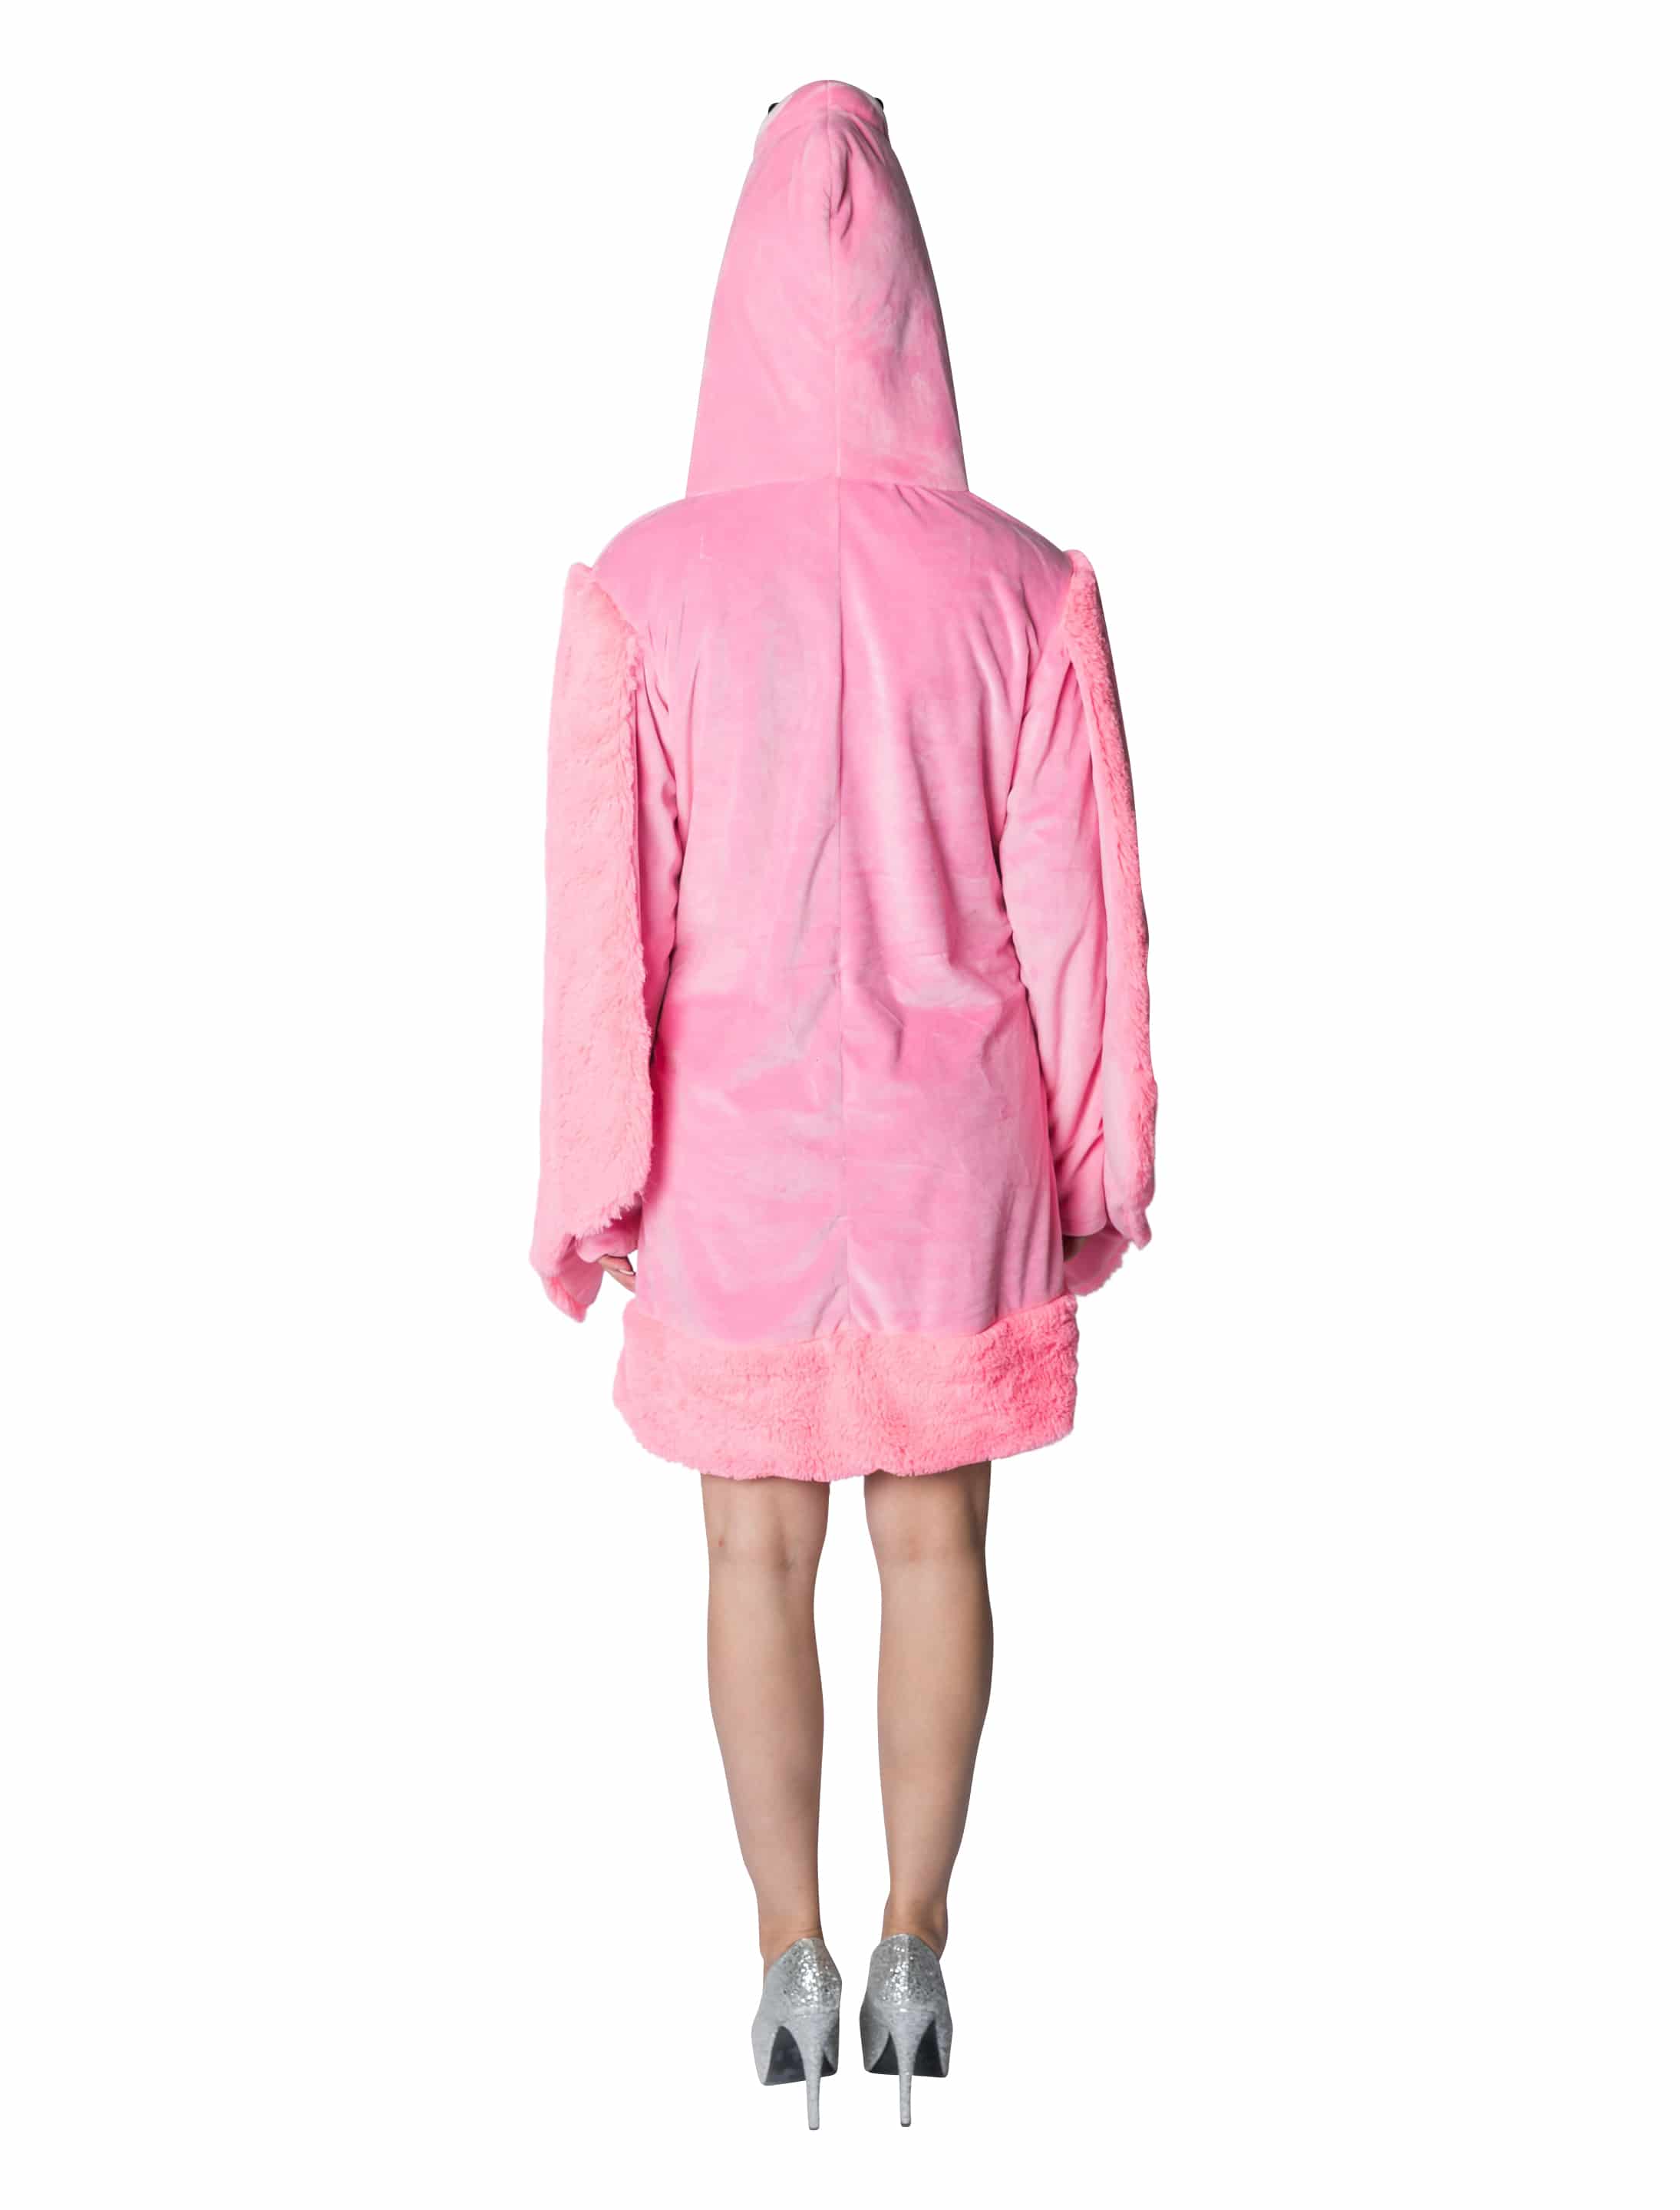 Kleid Plüsch Flamingo Damen pink 46/48